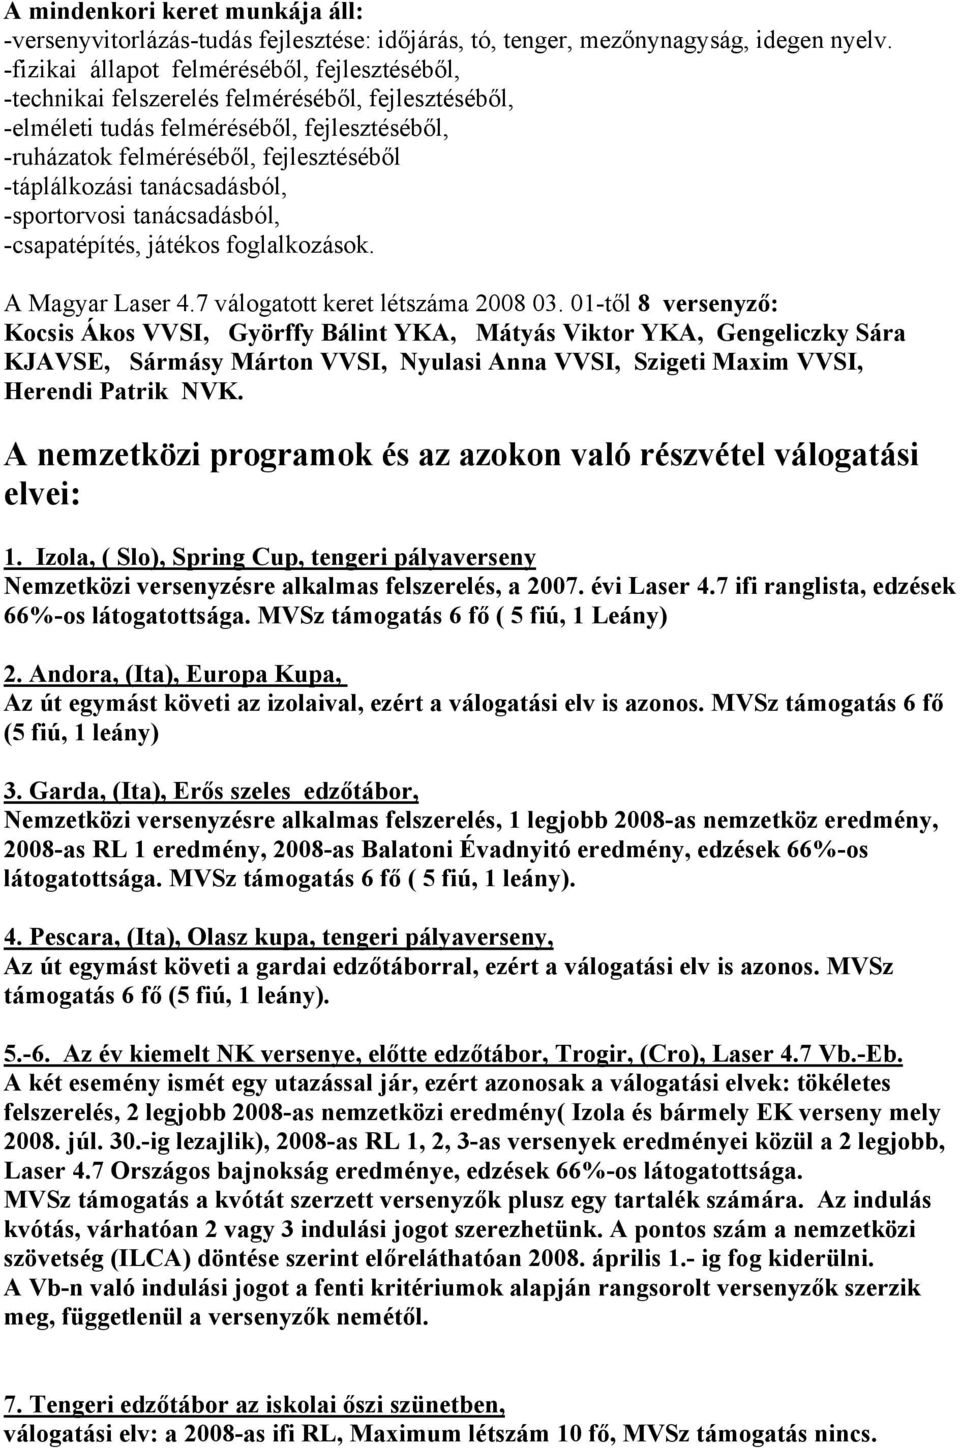 MAGYAR LASER OSZTÁLYSZÖVETSÉG, LASER 4.7 UTÁNPÓTLÁS KERET - PDF Ingyenes  letöltés